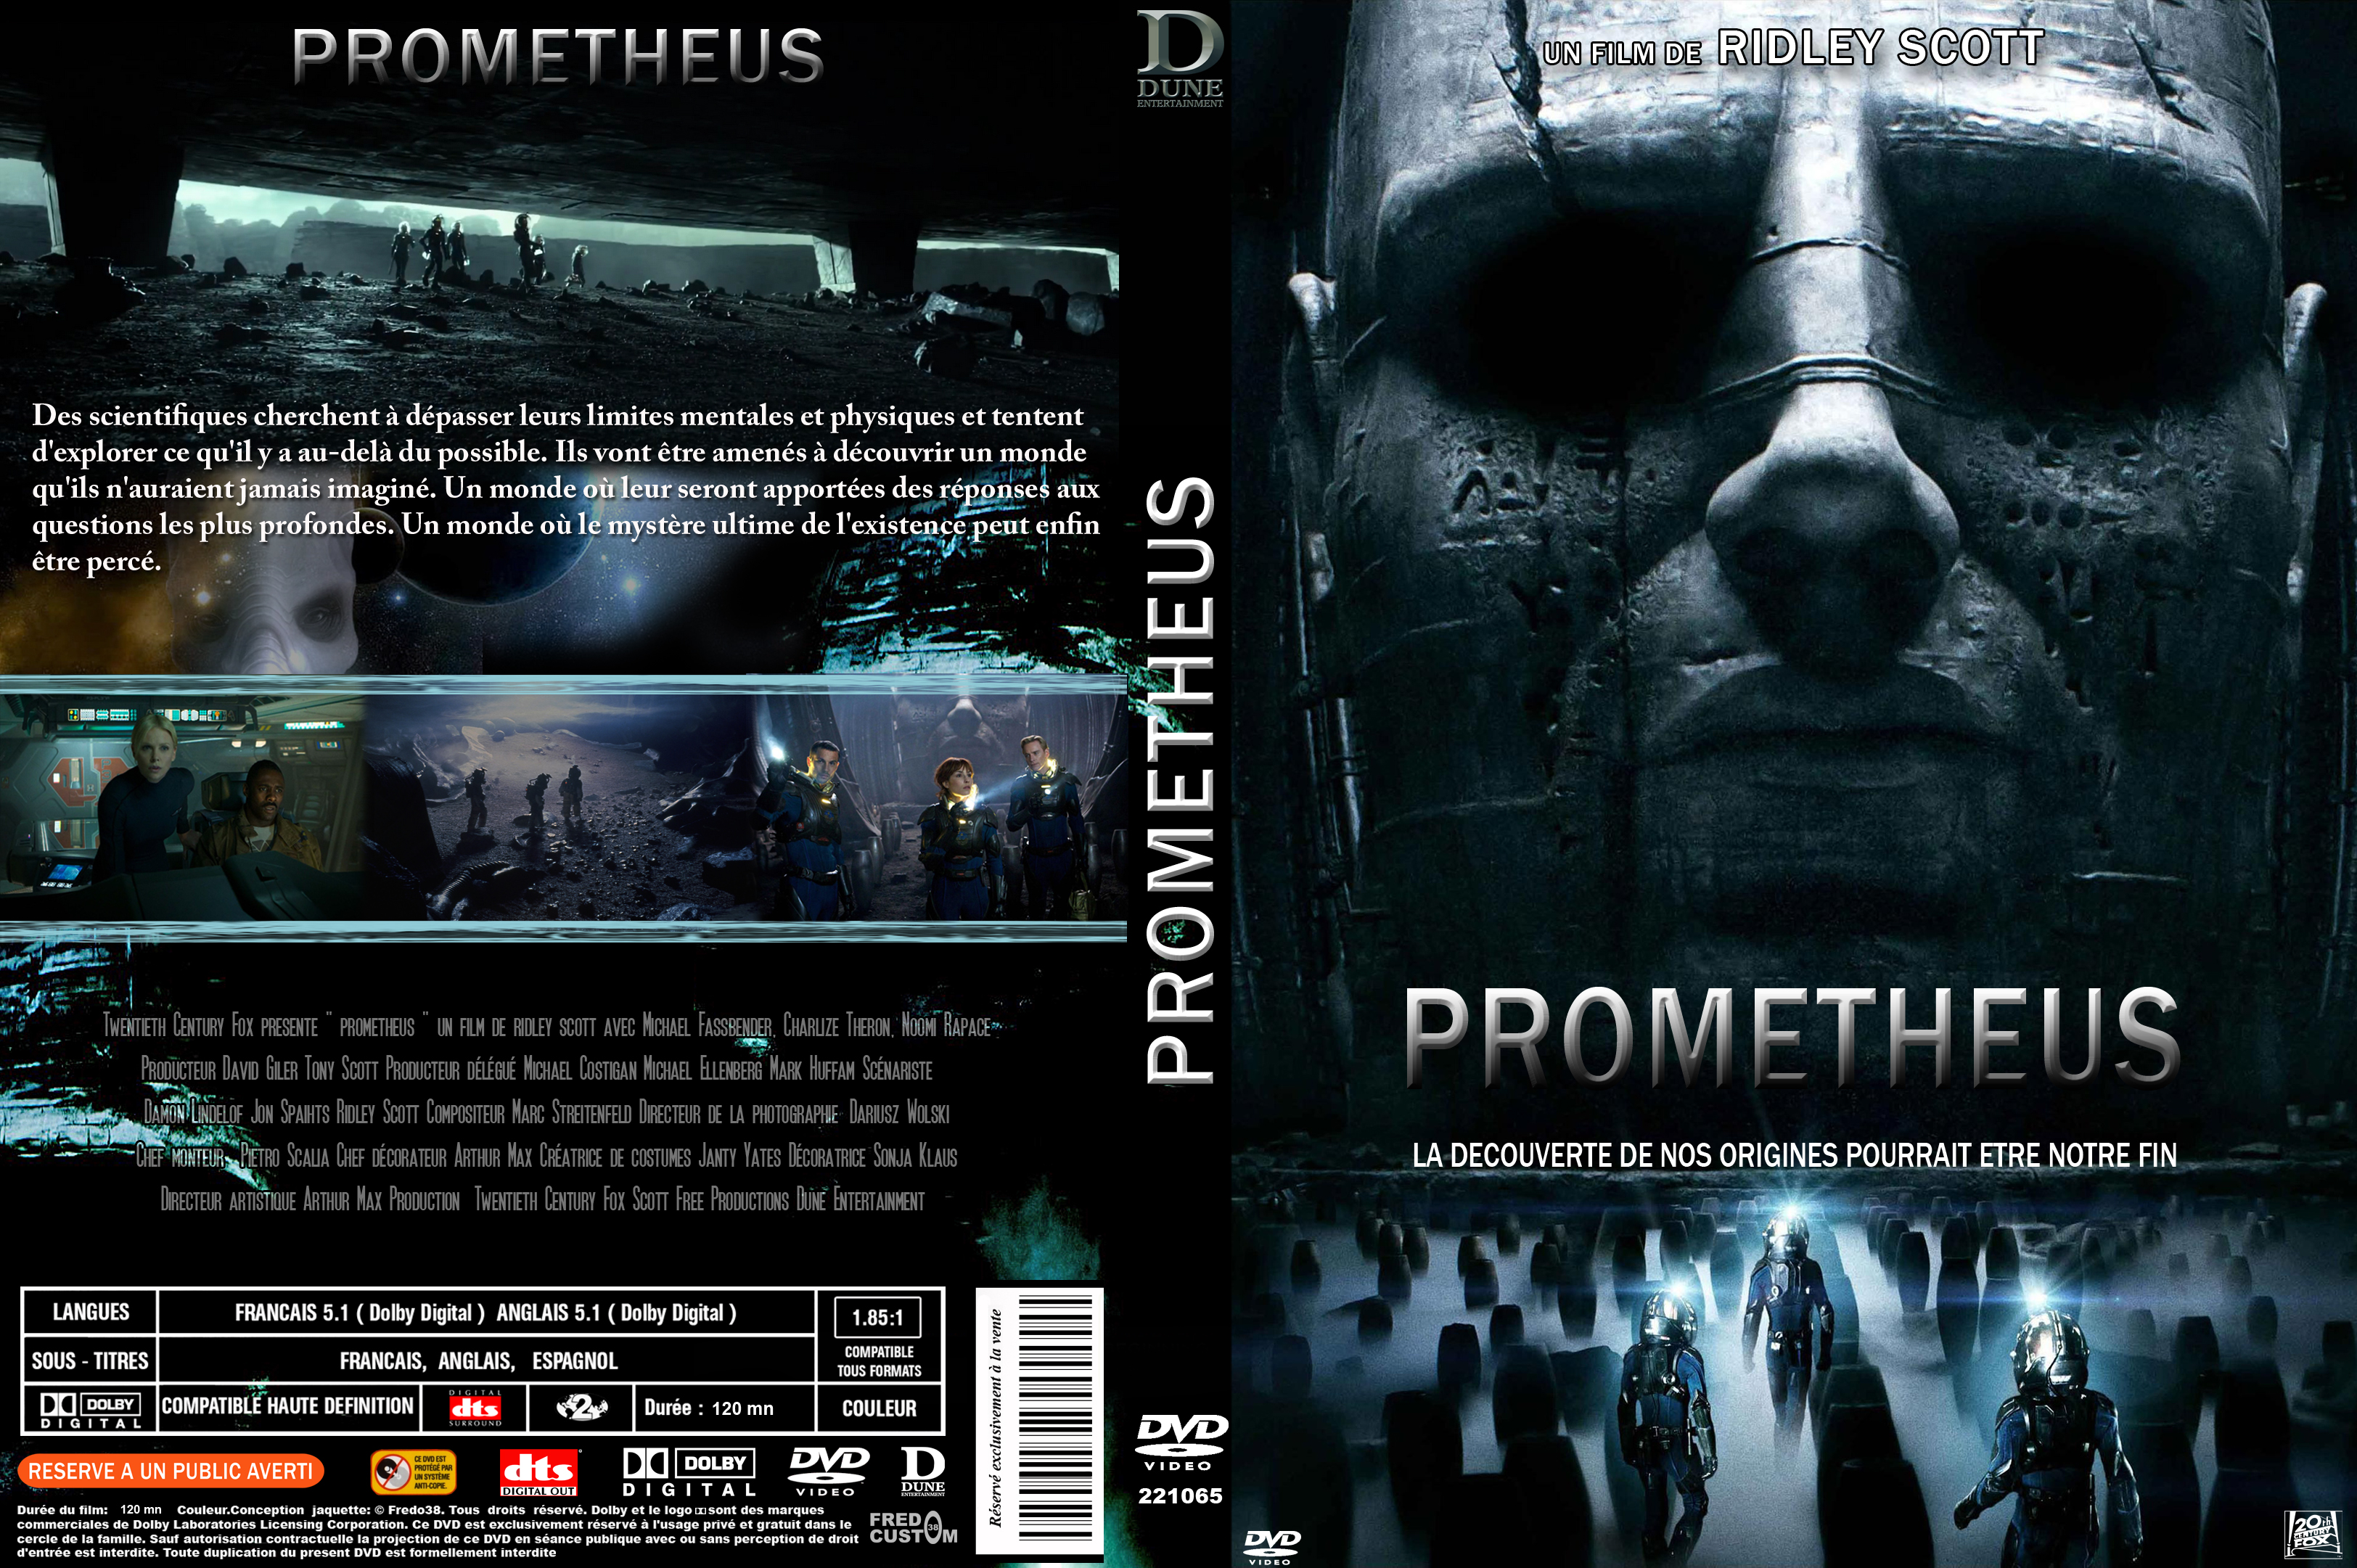 Jaquette DVD Prometheus custom